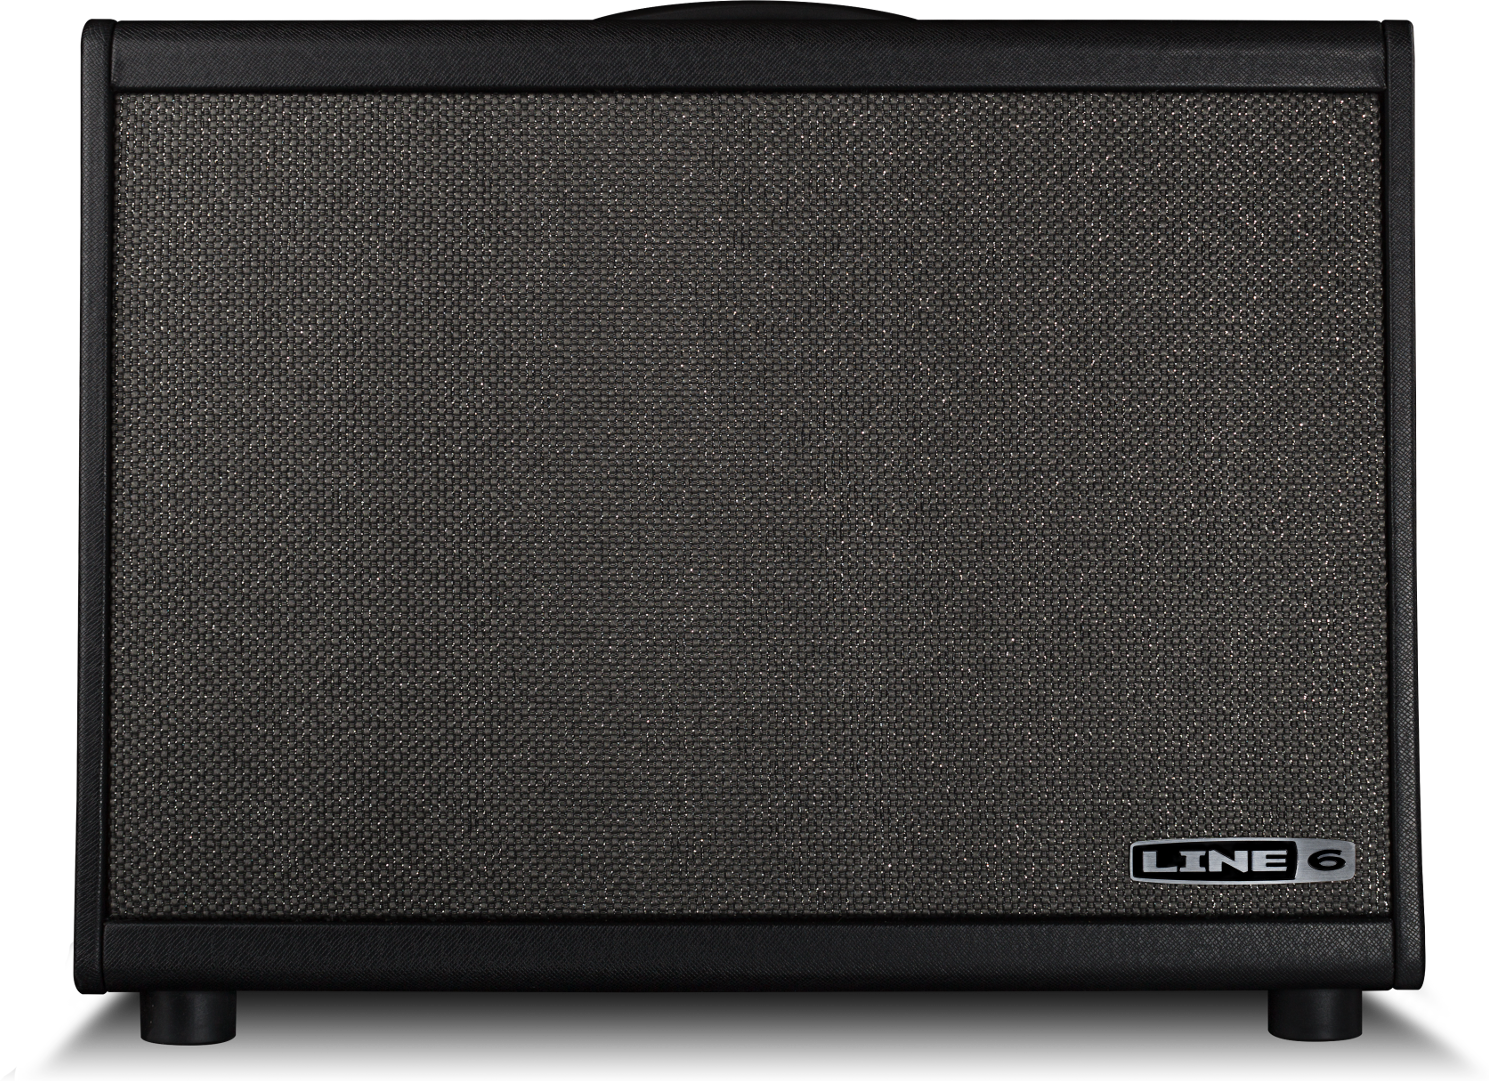 Line 6 Powercab 112 - Elektrische gitaar speakerkast - Main picture